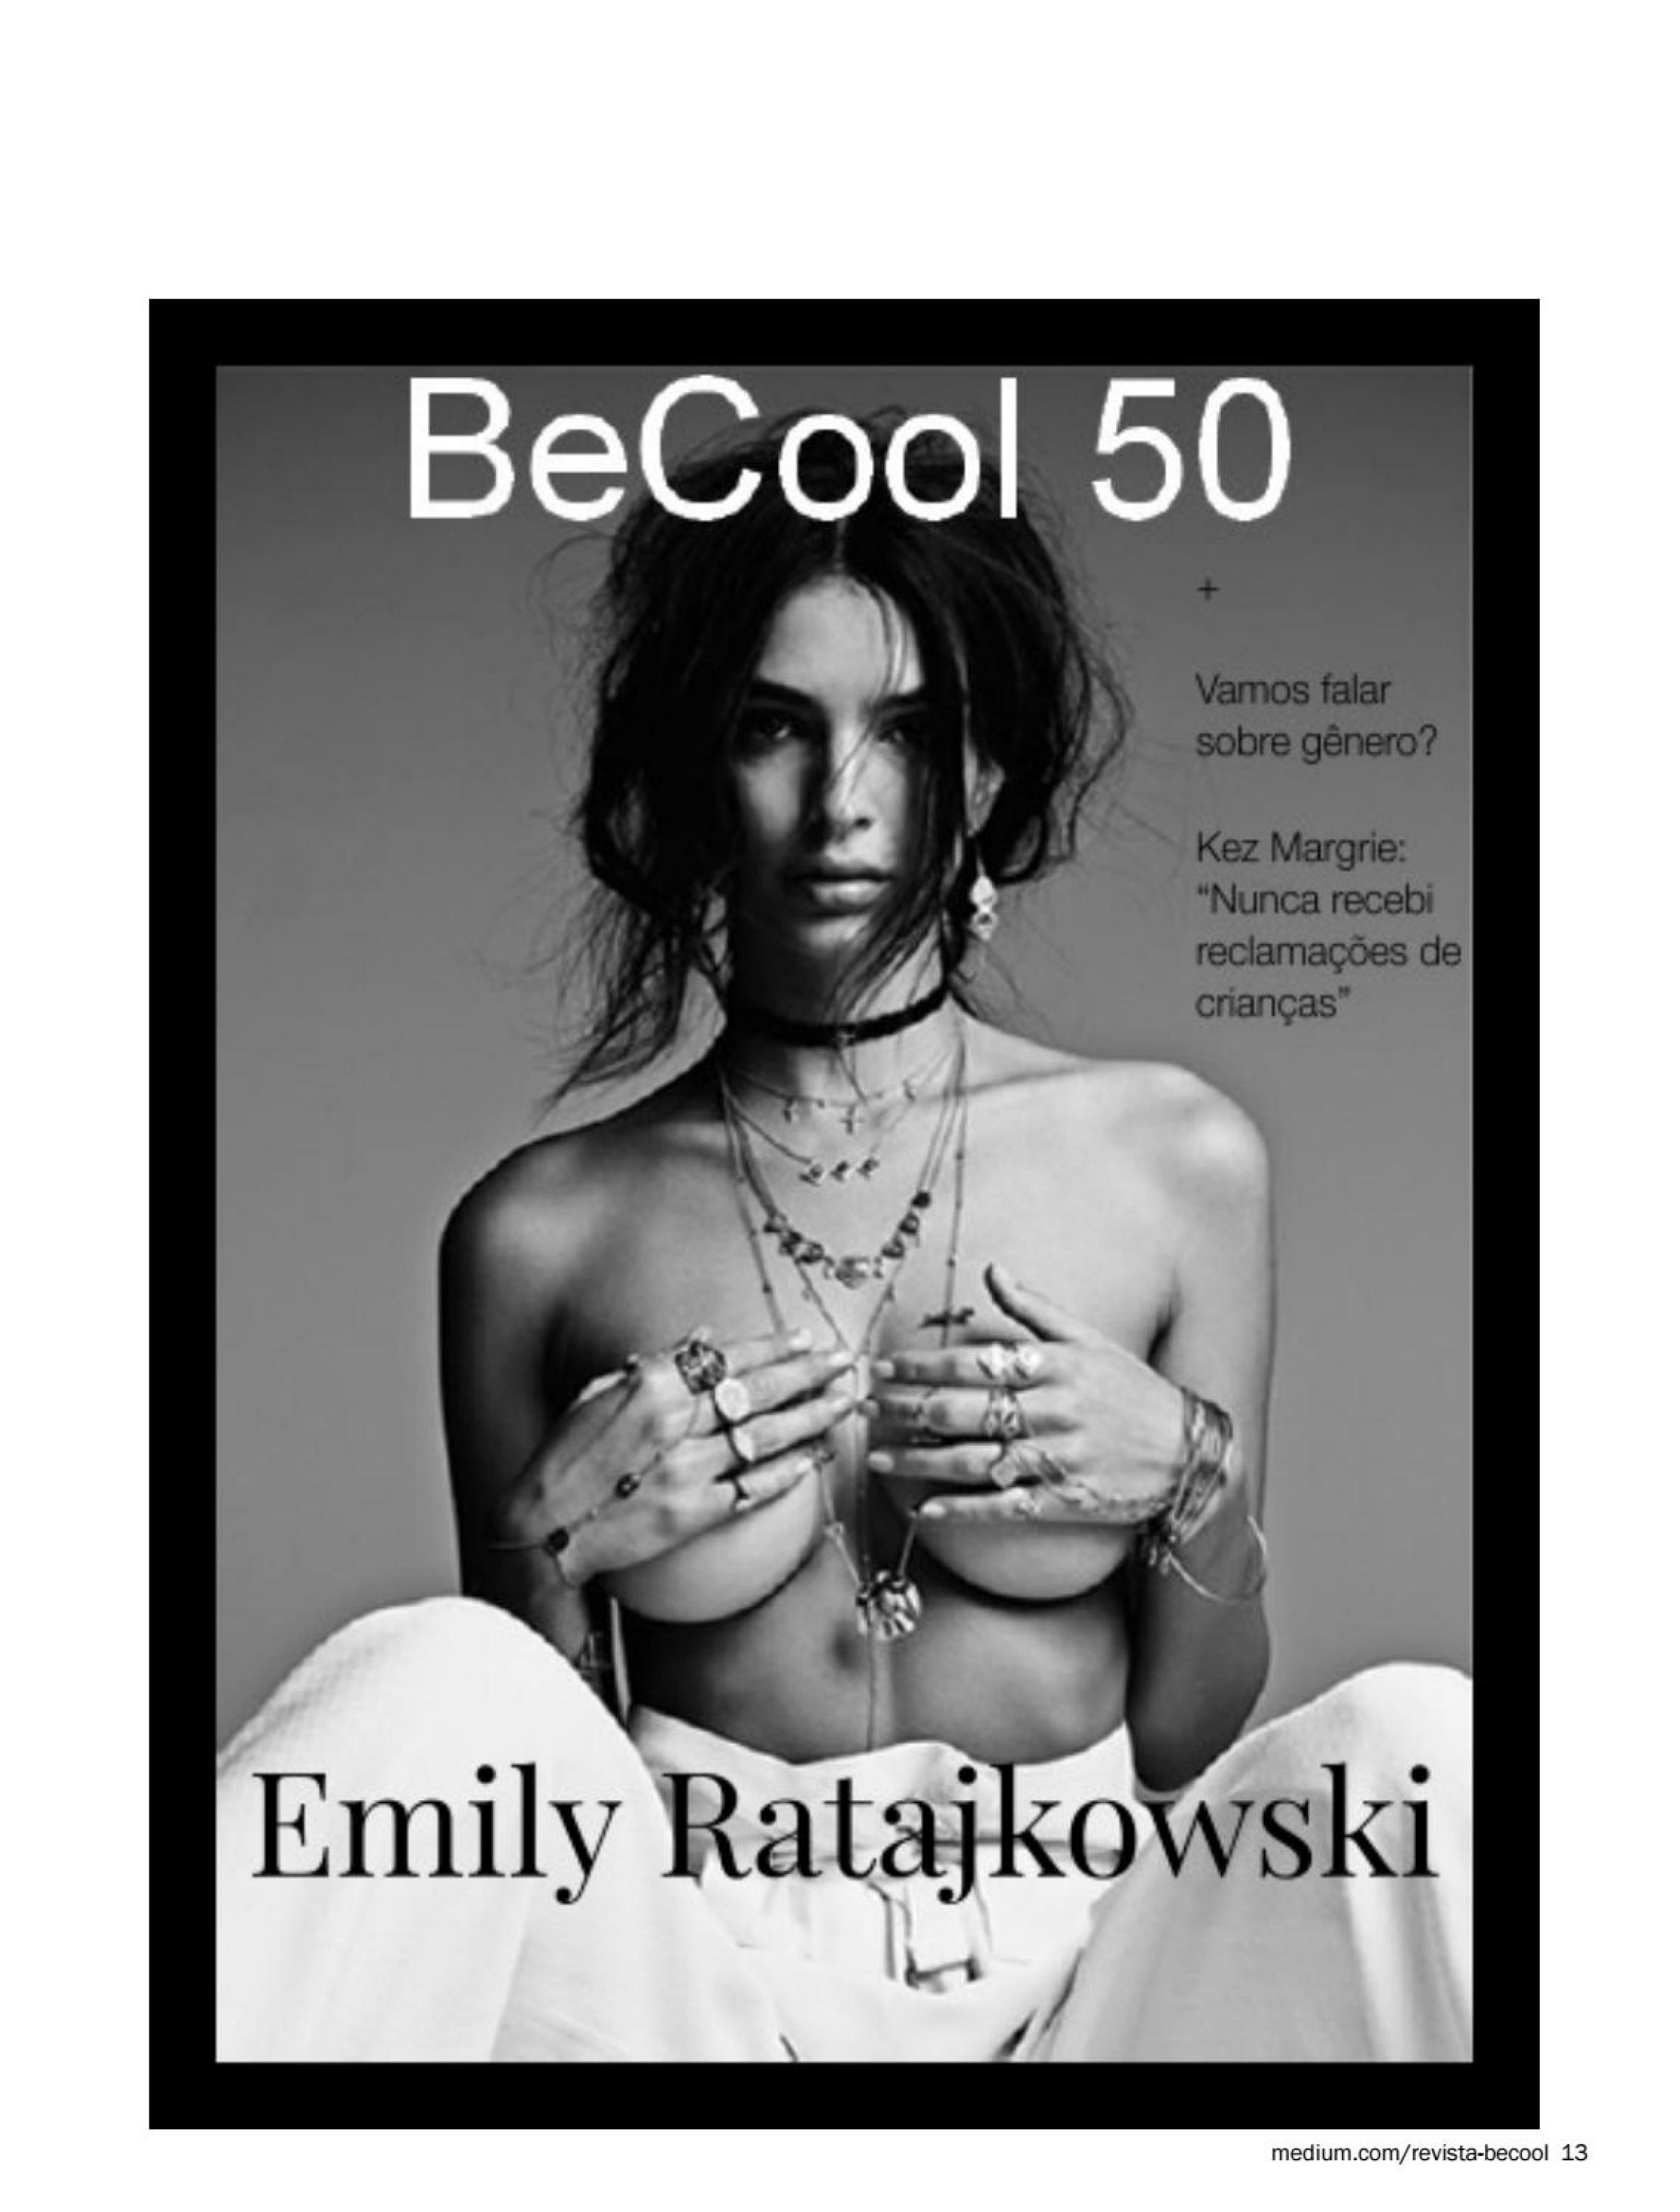 Emily Ratajkowski sexy